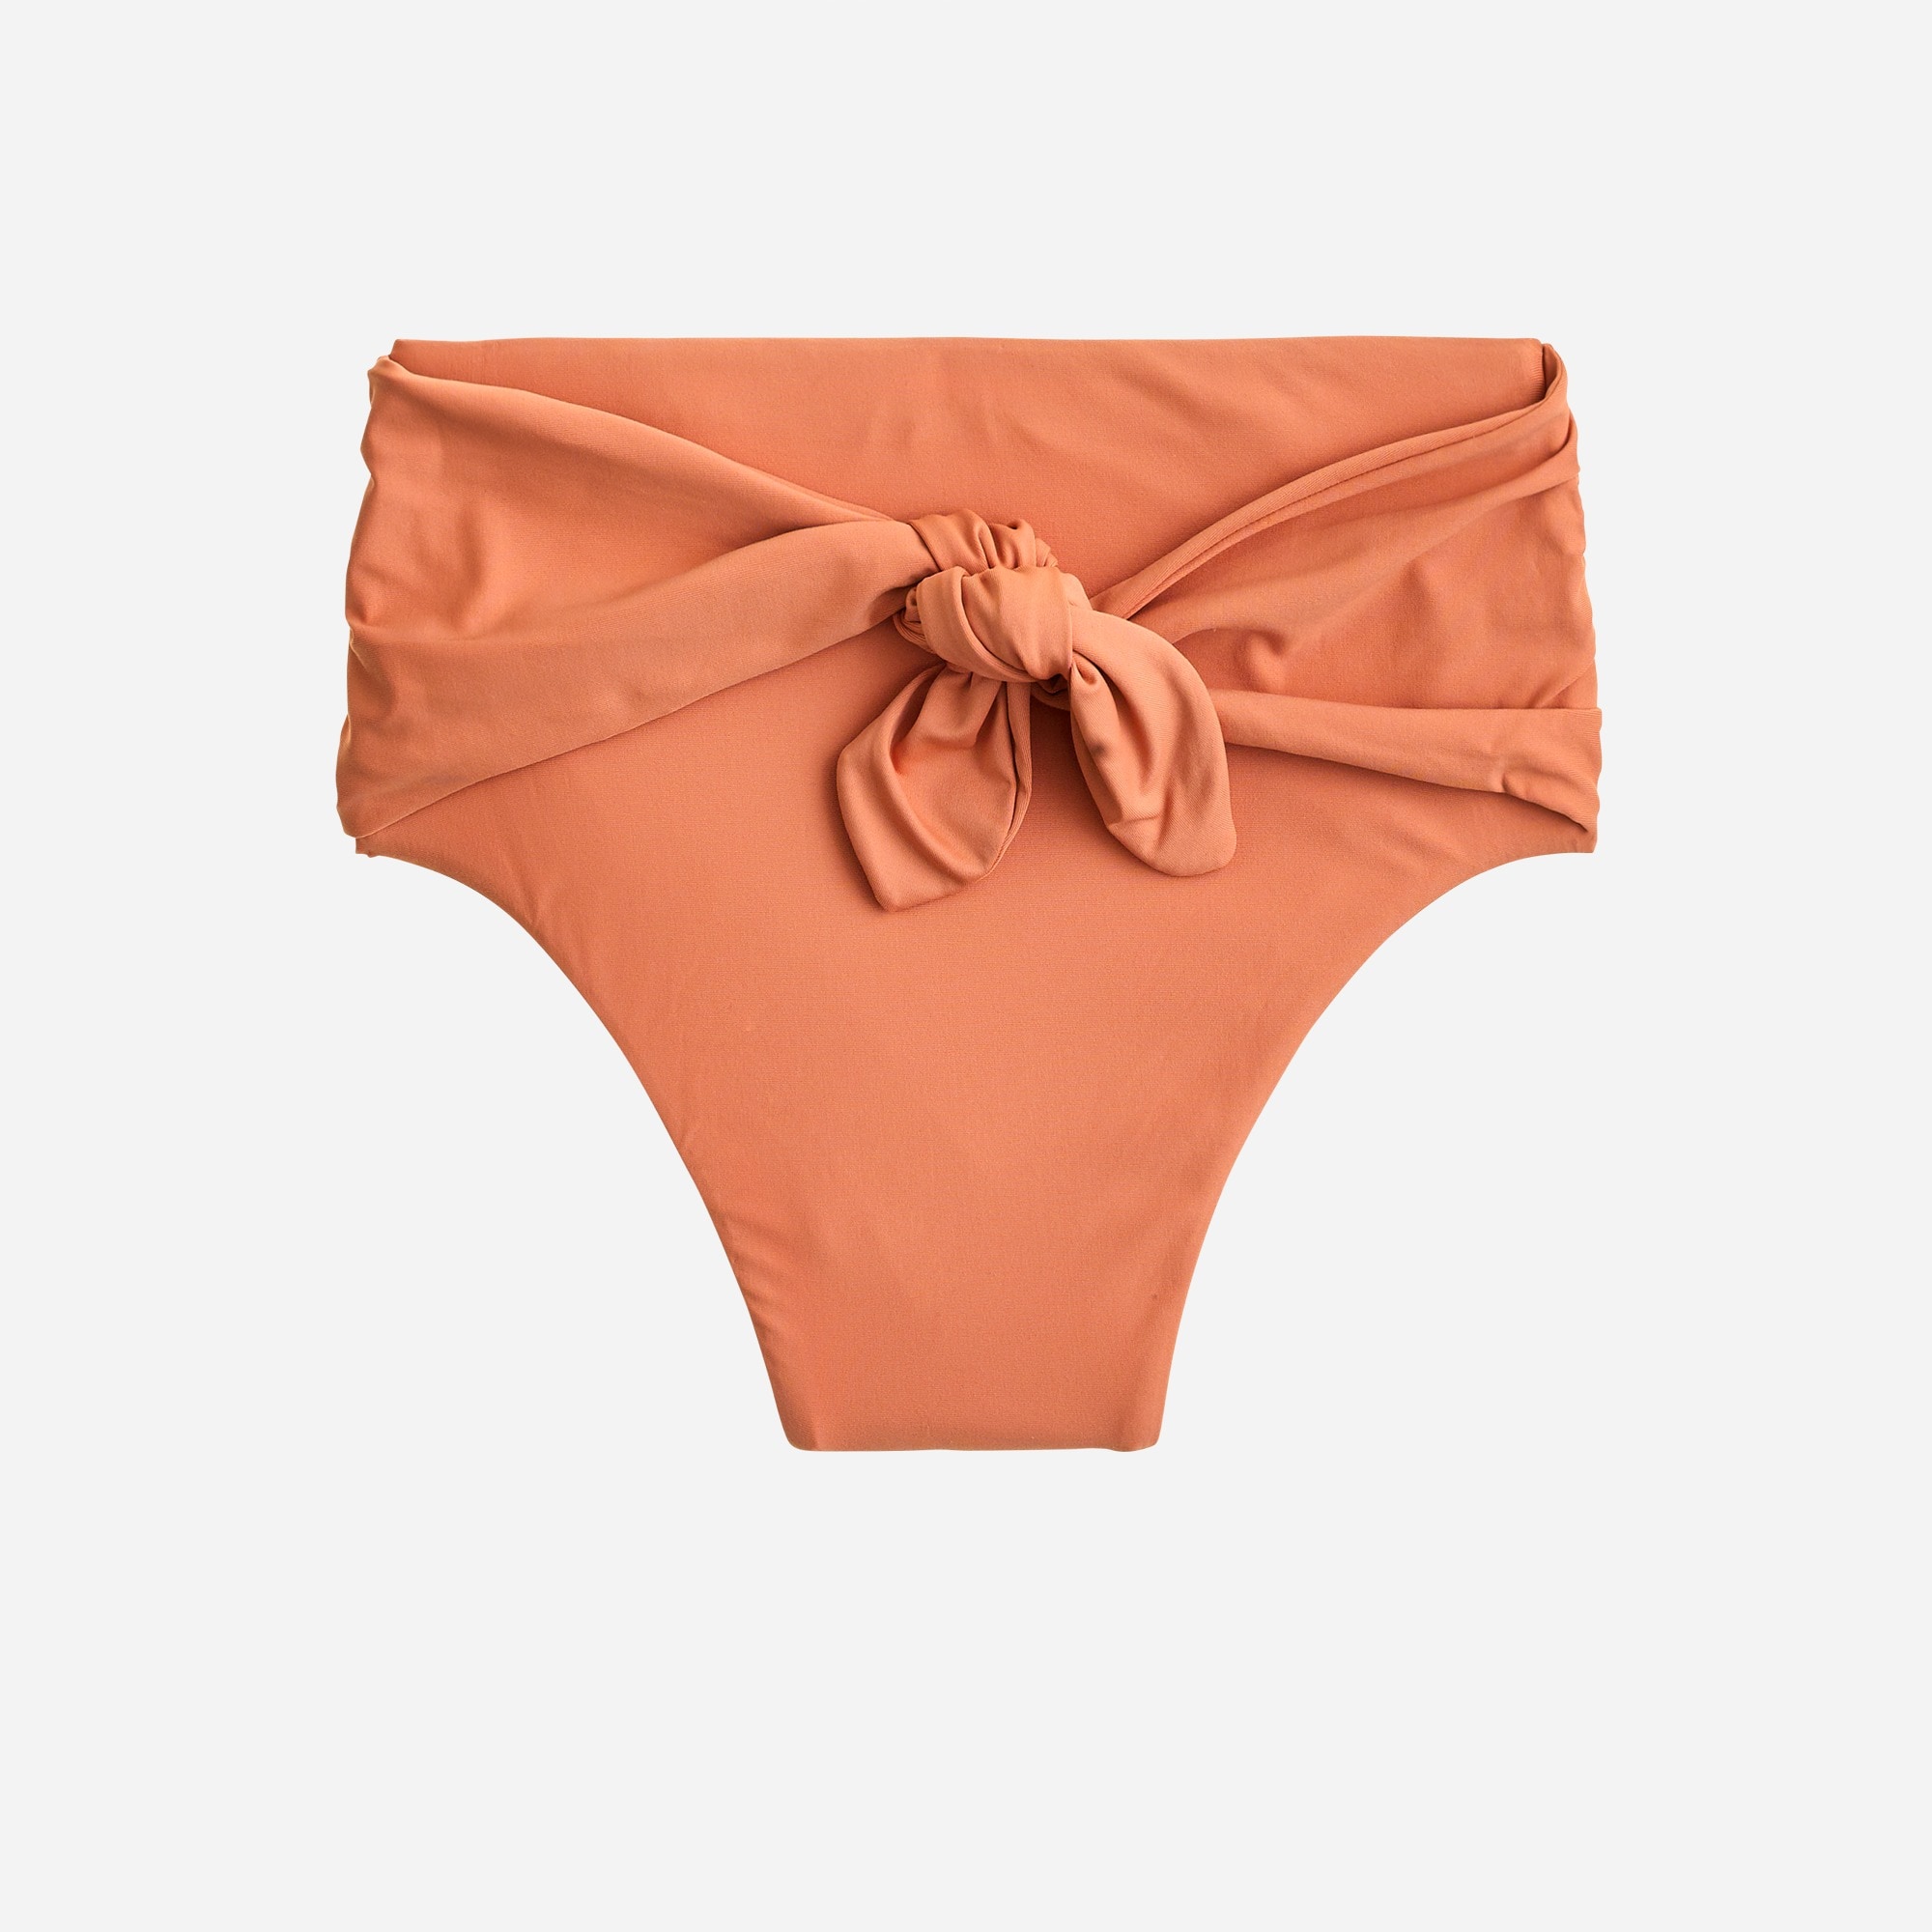  High-cut tie-waist bikini bottom